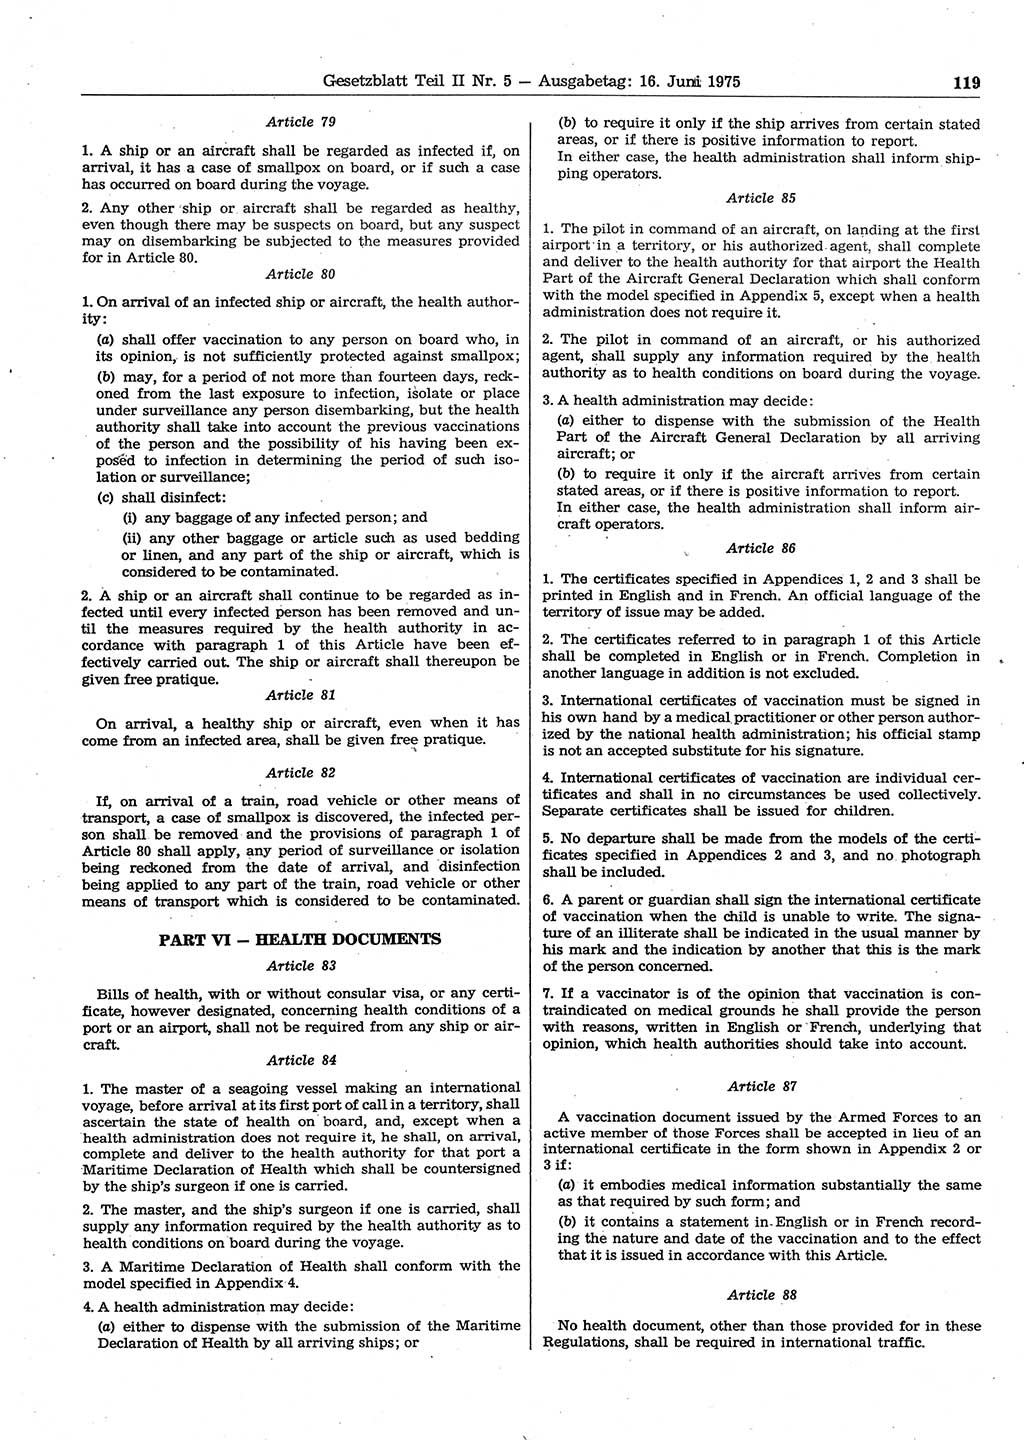 Gesetzblatt (GBl.) der Deutschen Demokratischen Republik (DDR) Teil ⅠⅠ 1975, Seite 119 (GBl. DDR ⅠⅠ 1975, S. 119)